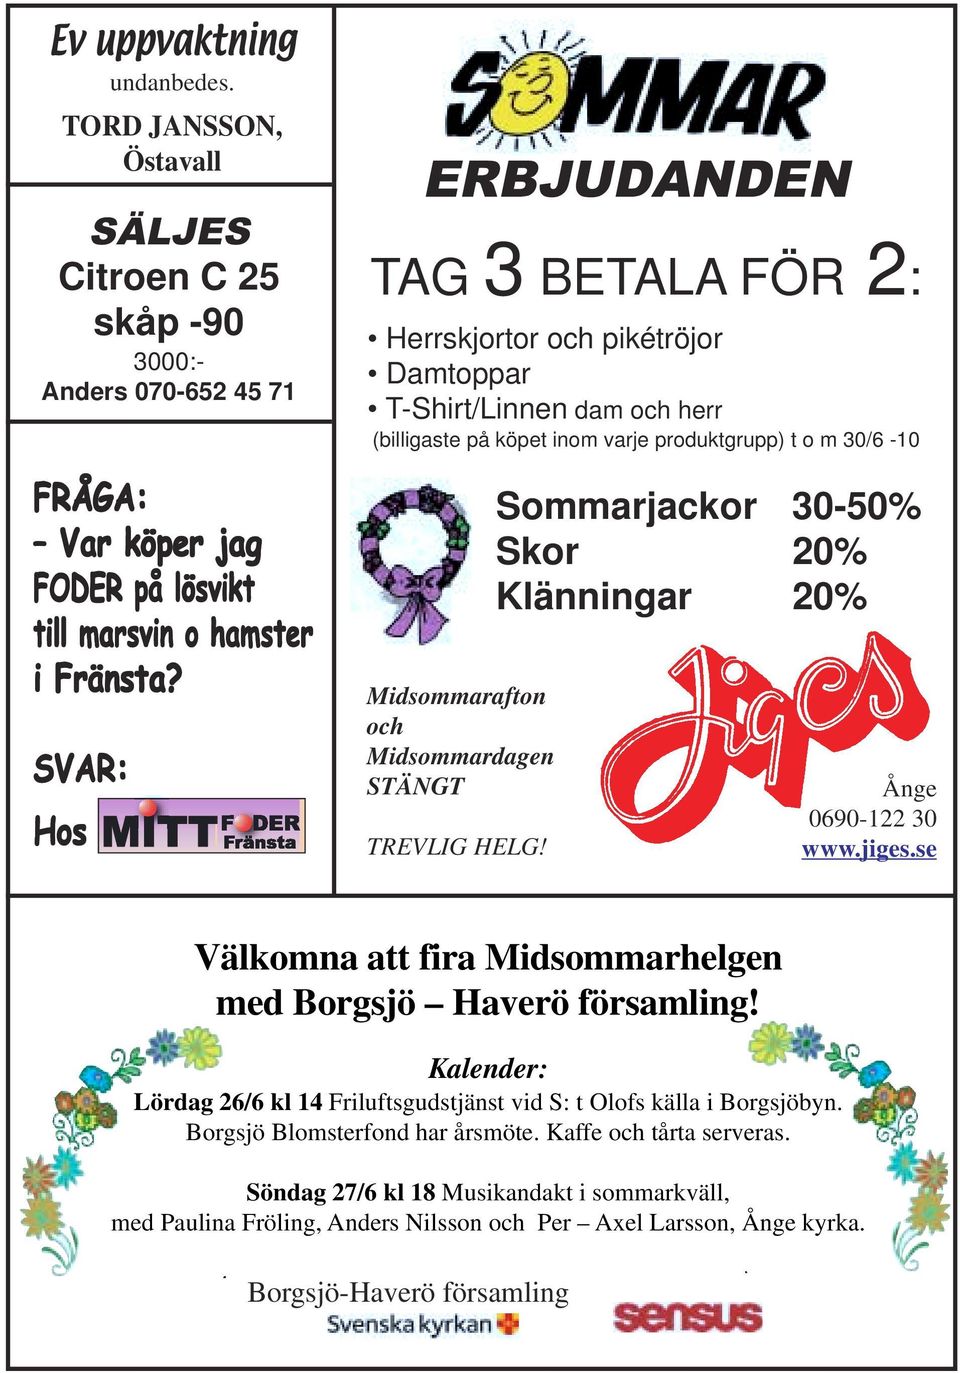 Midsommardagen STÄNGT TREVLIG HELG! Sommarjackor 30-50% Skor 20% Klänningar 20% Ånge 0690-122 30 www.jiges.se Välkomna att fira Midsommarhelgen med Borgsjö Haverö församling!